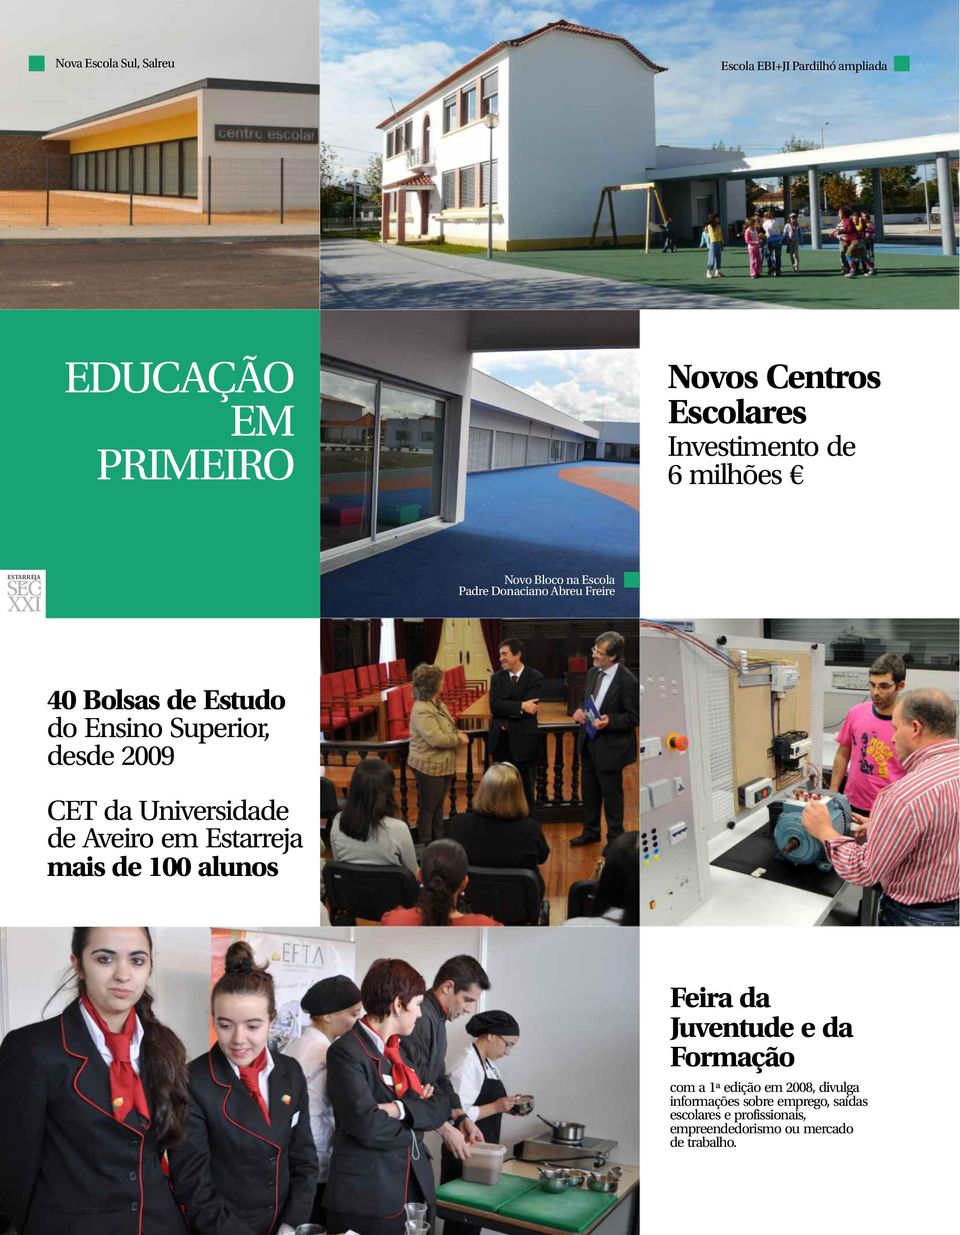 CET da Universidade de Aveiro em Estarreja mais de 100 alunos Feira da Juventude e da Formação com a 1ª edição em